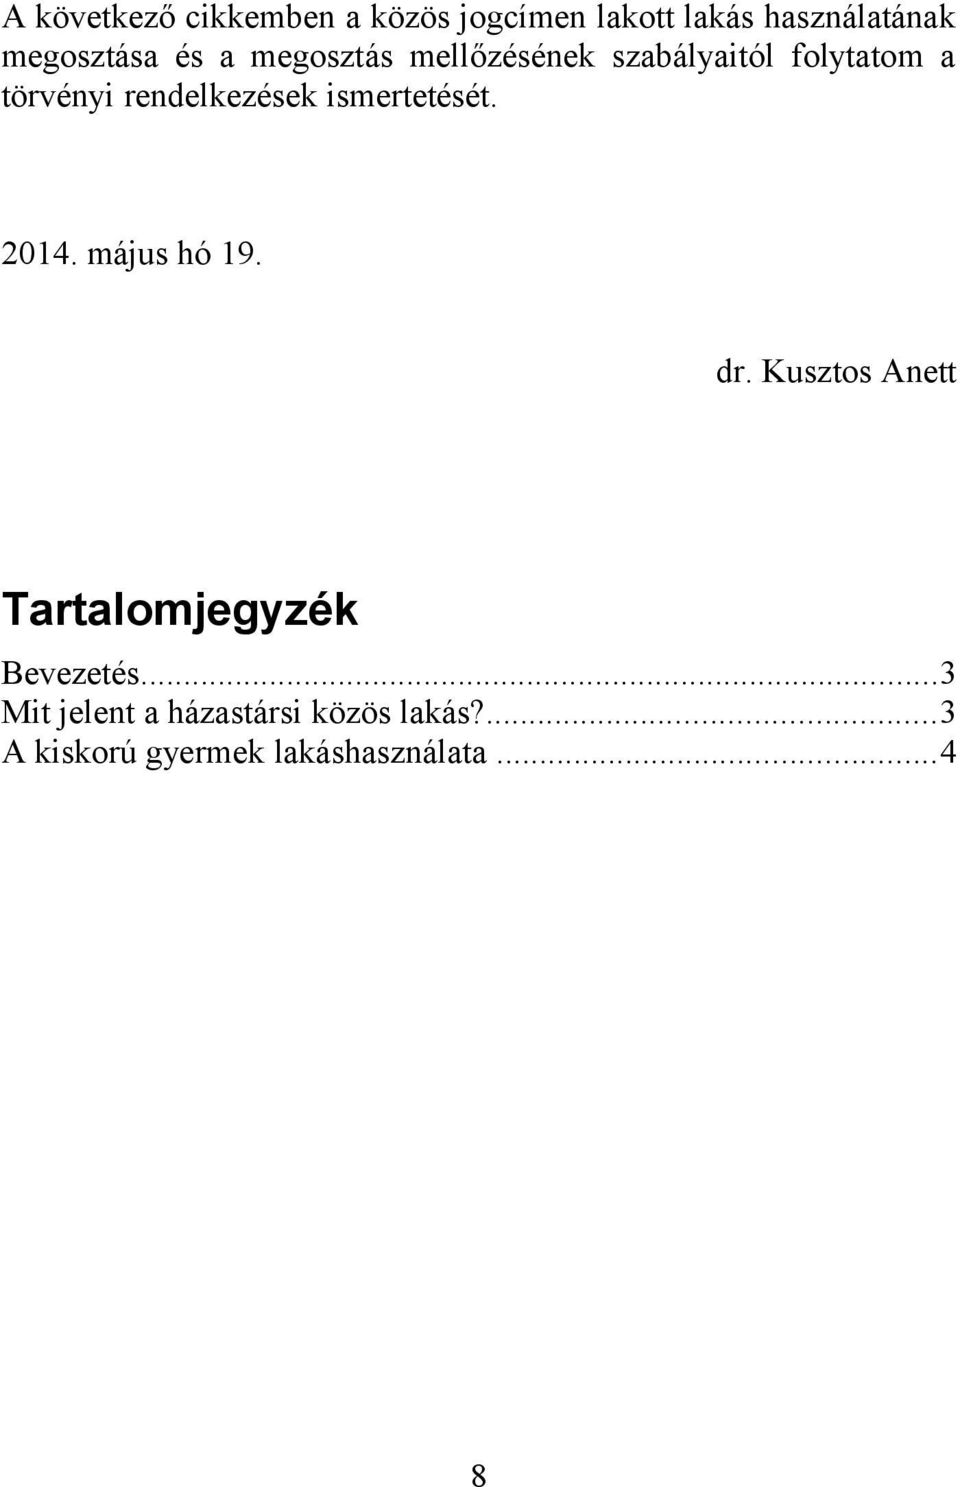 ismertetését. 2014. május hó 19. dr. Kusztos Anett Tartalomjegyzék Bevezetés.